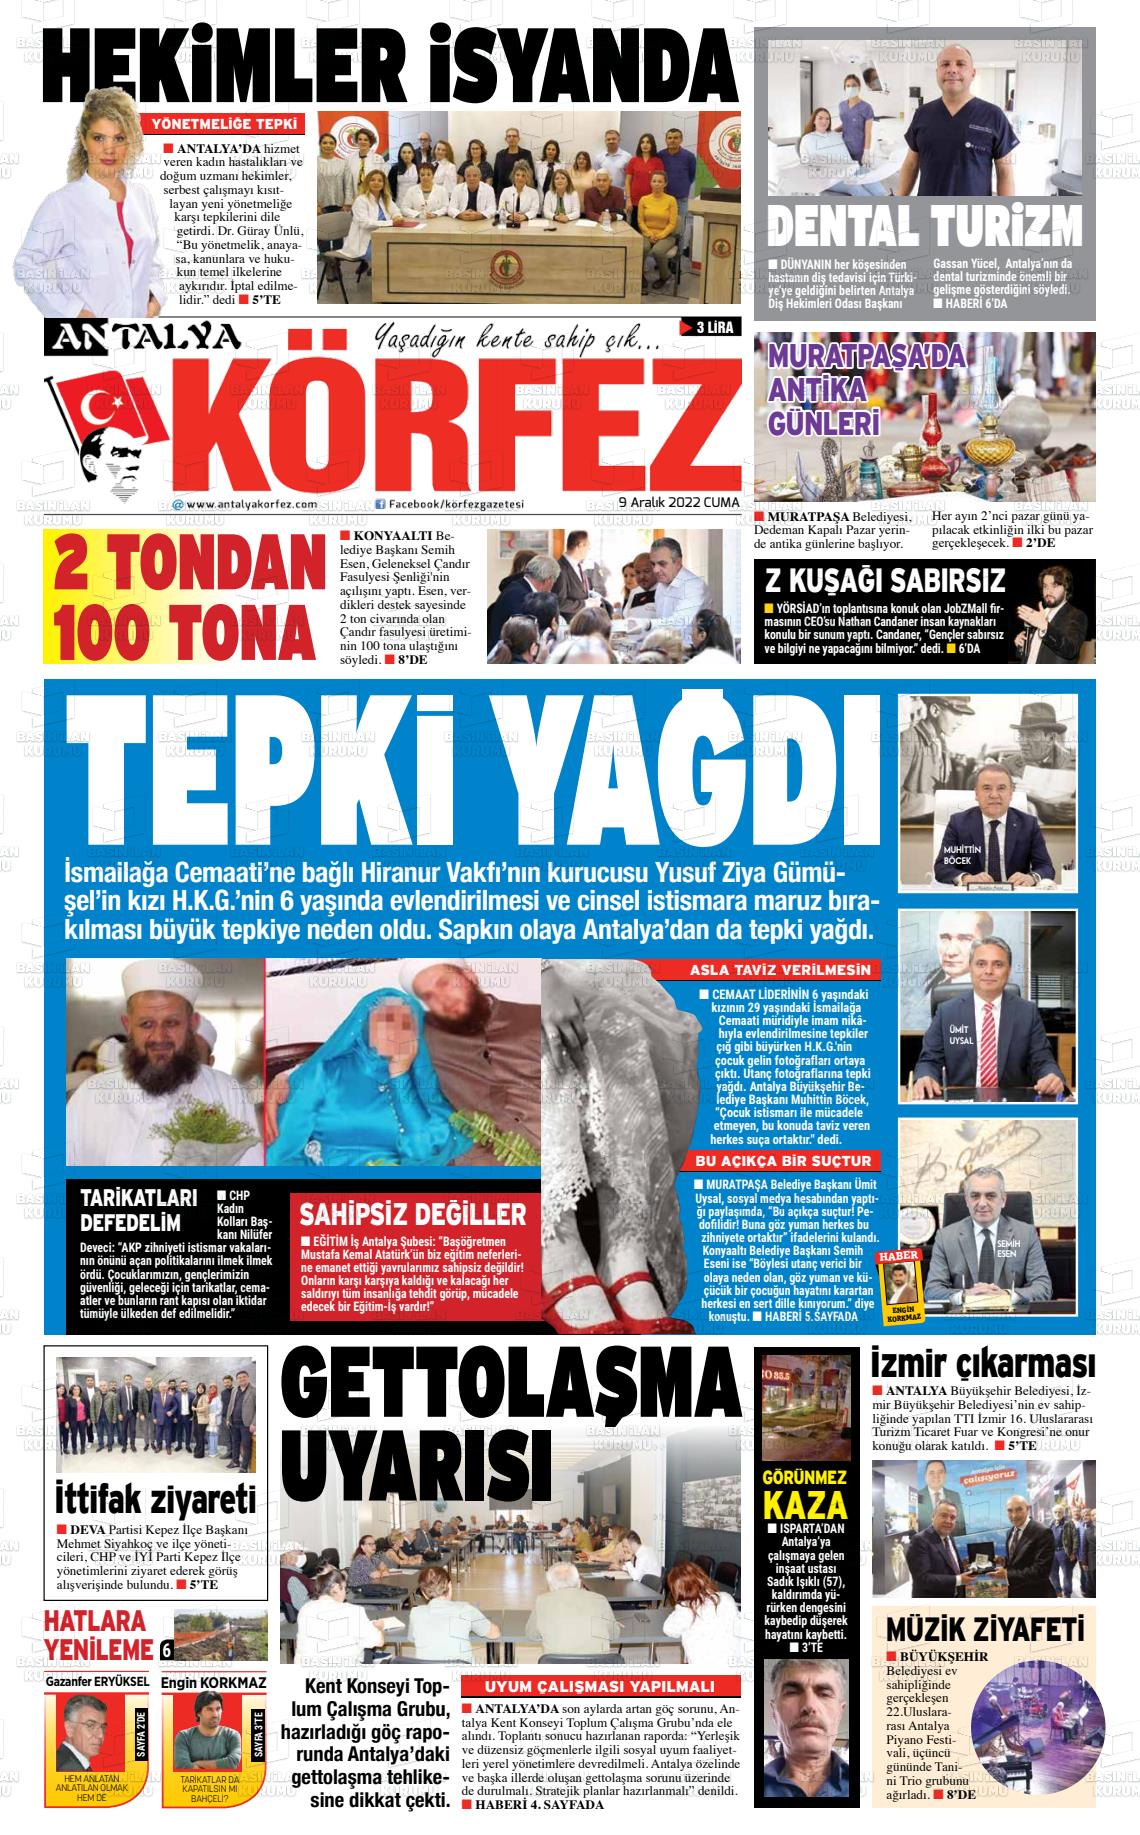 09 Aralık 2022 Antalya Körfez Gazete Manşeti